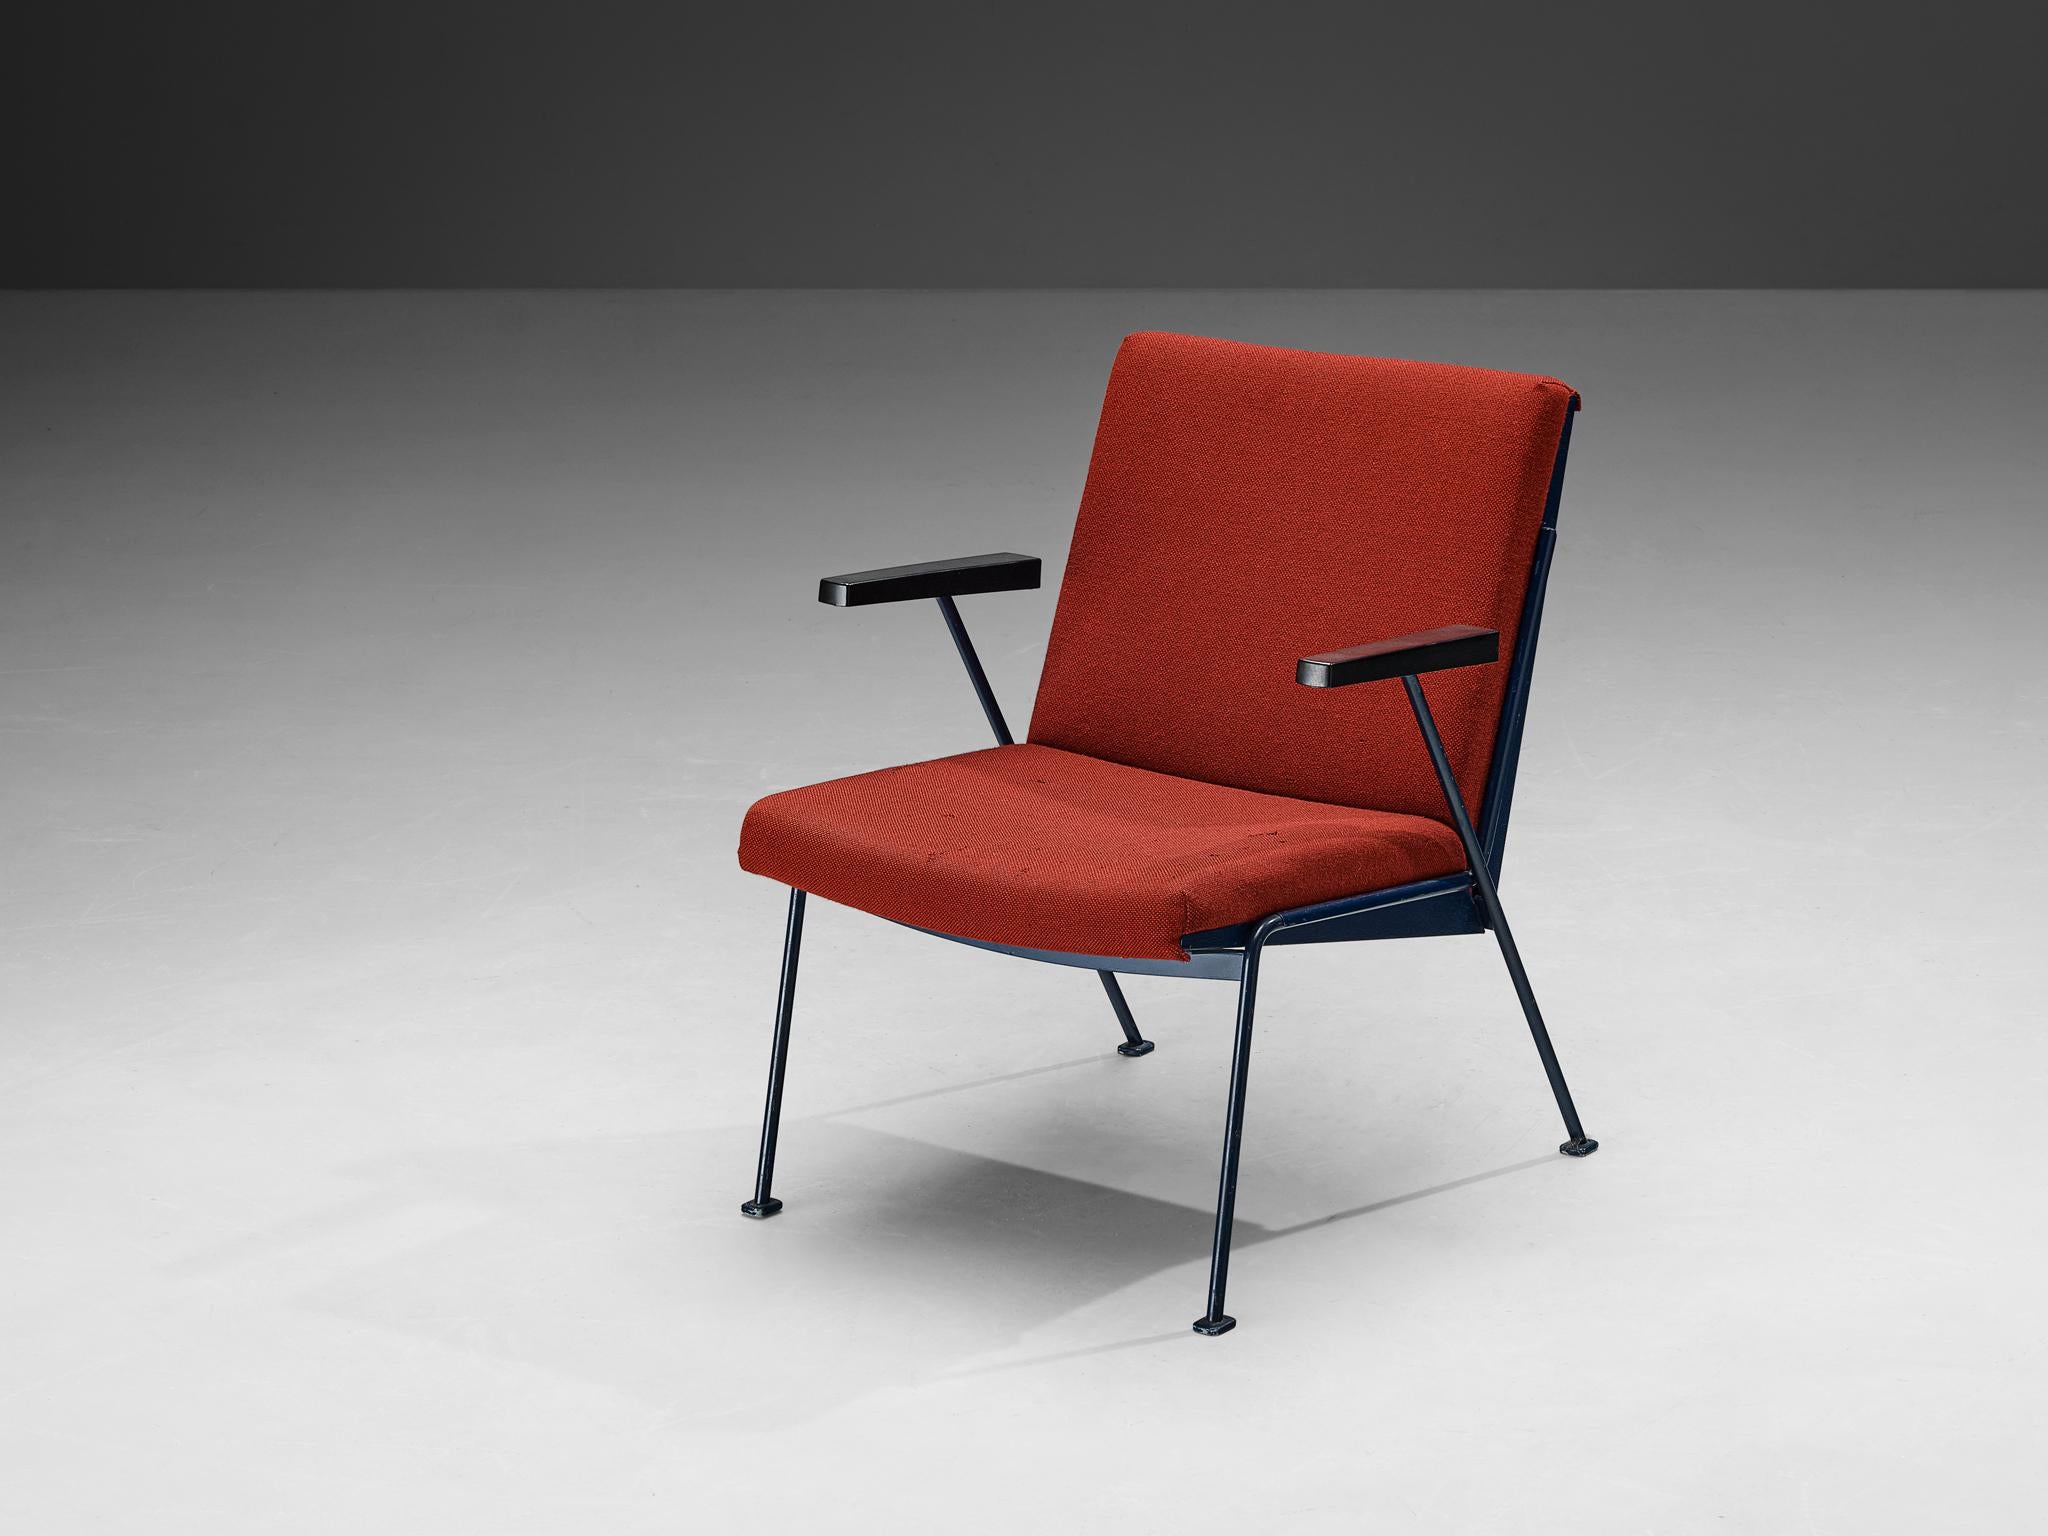 Wim Rietveld pour Ahrend De Cirkel, chaise longue 'Oase', bakélite, acier laqué, tissu, Pays-Bas, années 1950.

Cette chaise One très sculpturale a été créée par le designer néerlandais Wim Rietveld pour Ahrend De Cirkel. Cette chaise confortable